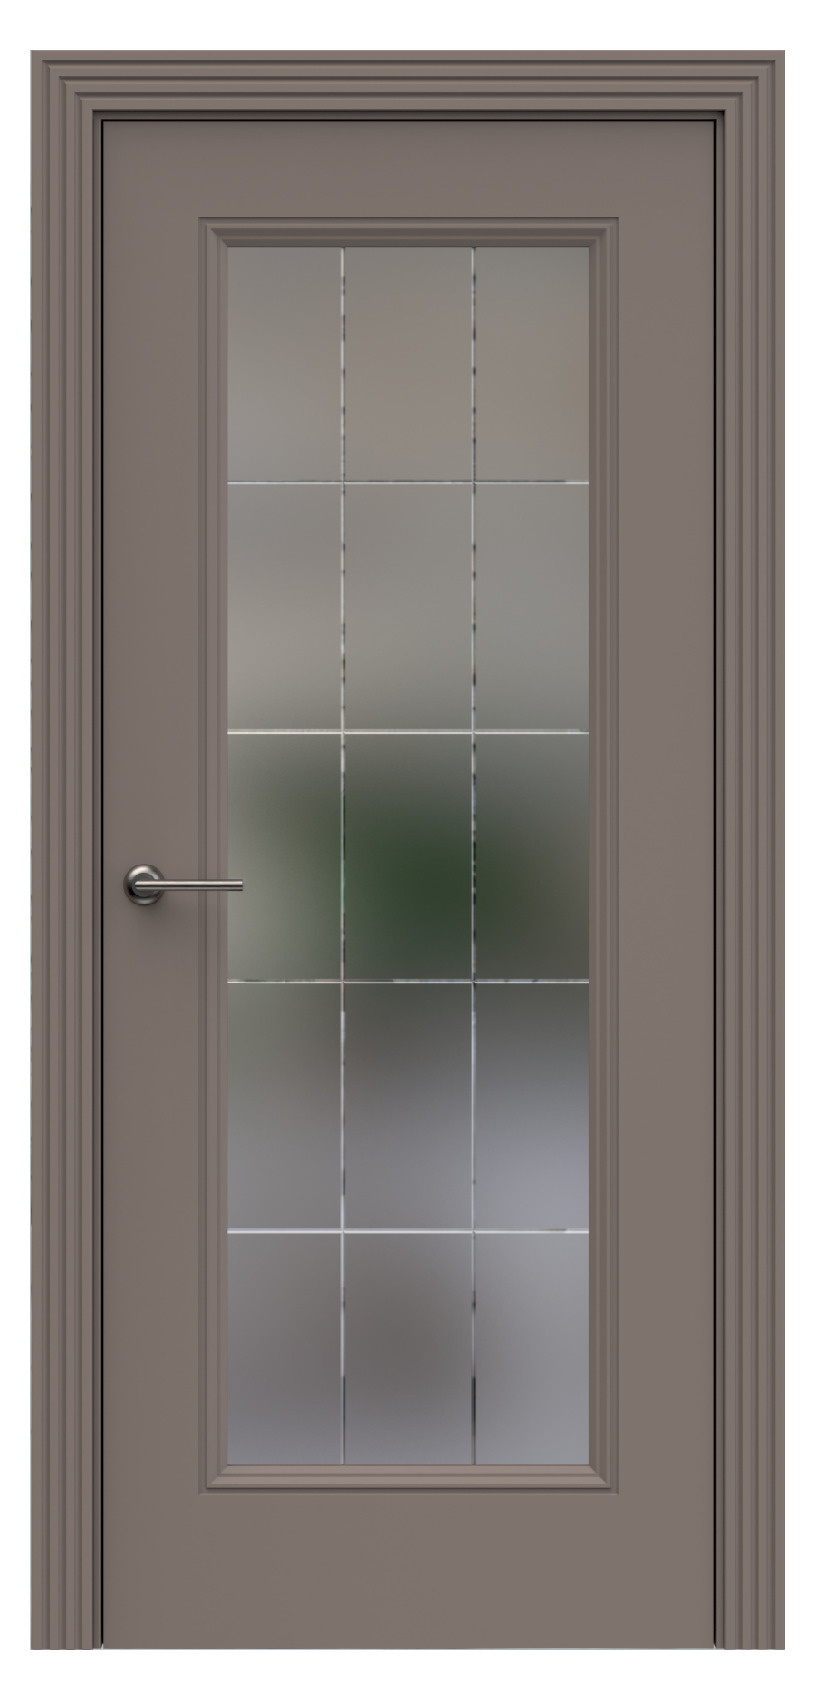 Questdoors Межкомнатная дверь QB8, арт. 17909 - фото №1